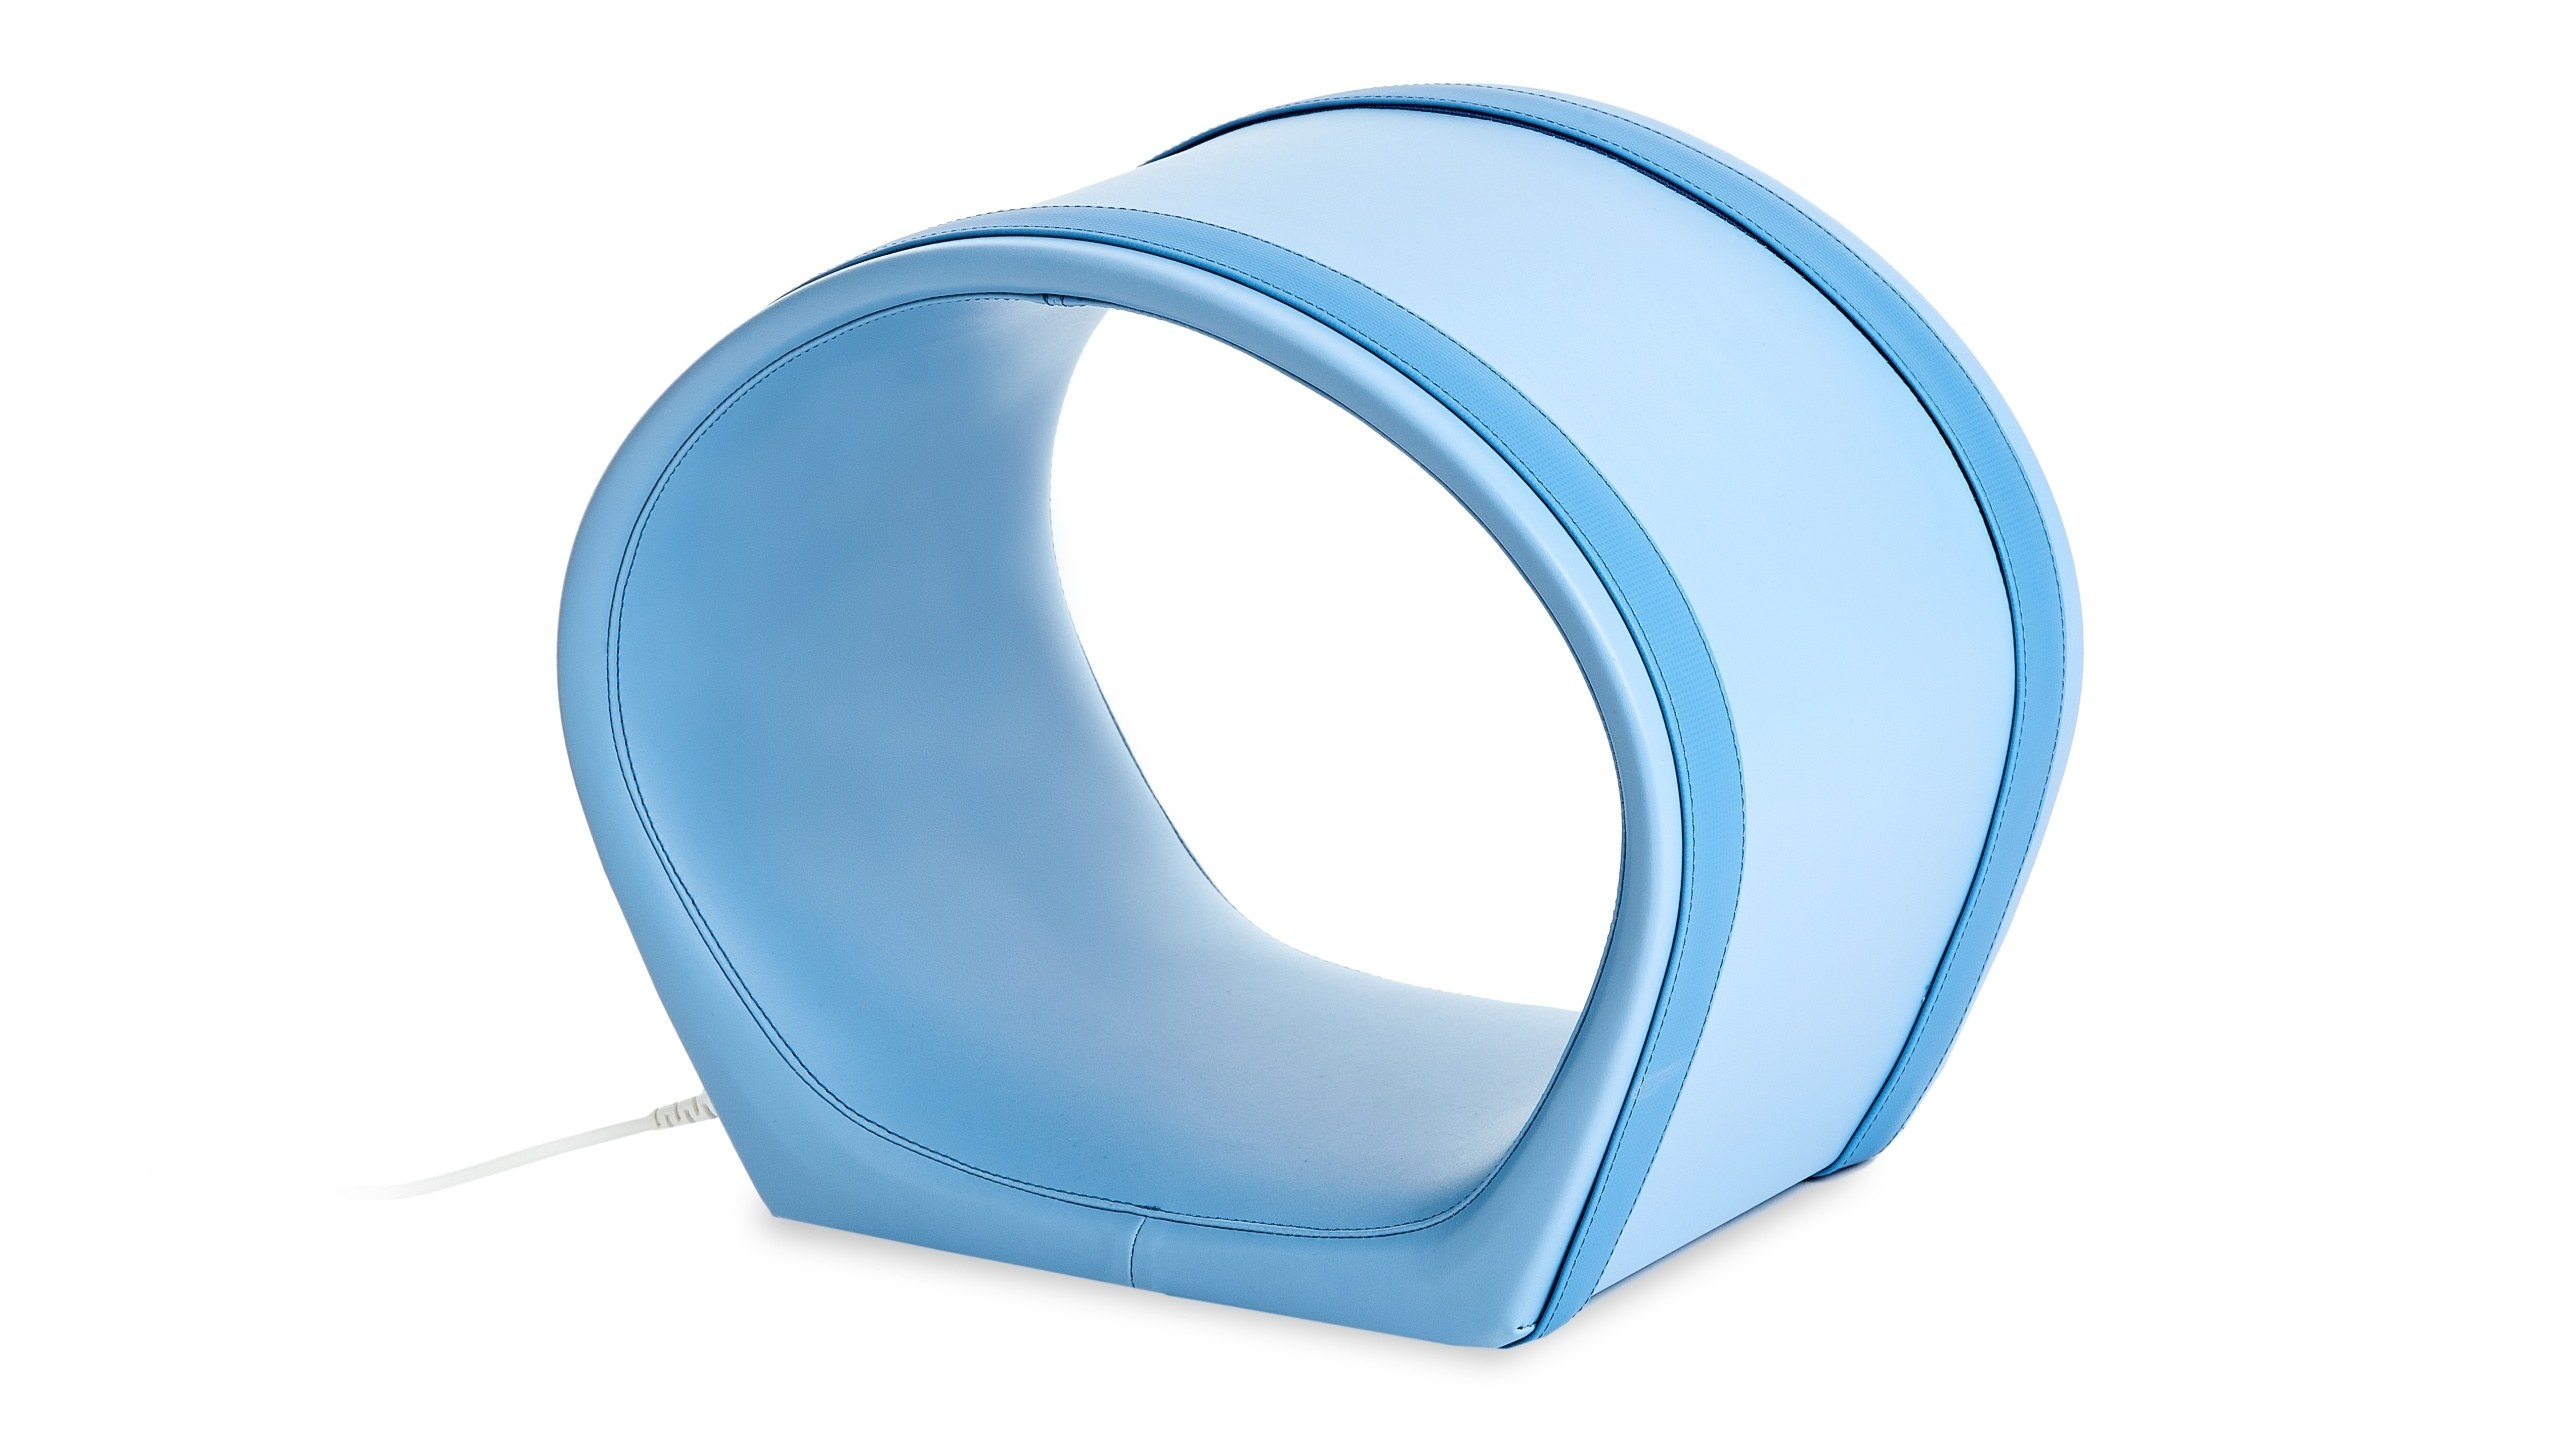 Krožni aplikator za magnetno terapijo A3S s ploščatim dnom in 3D impulzi. Zadostuje, da ga namestite na ustrezni del telesa in aplicirate terapijo z njegovim protibolečinskim učinkom.